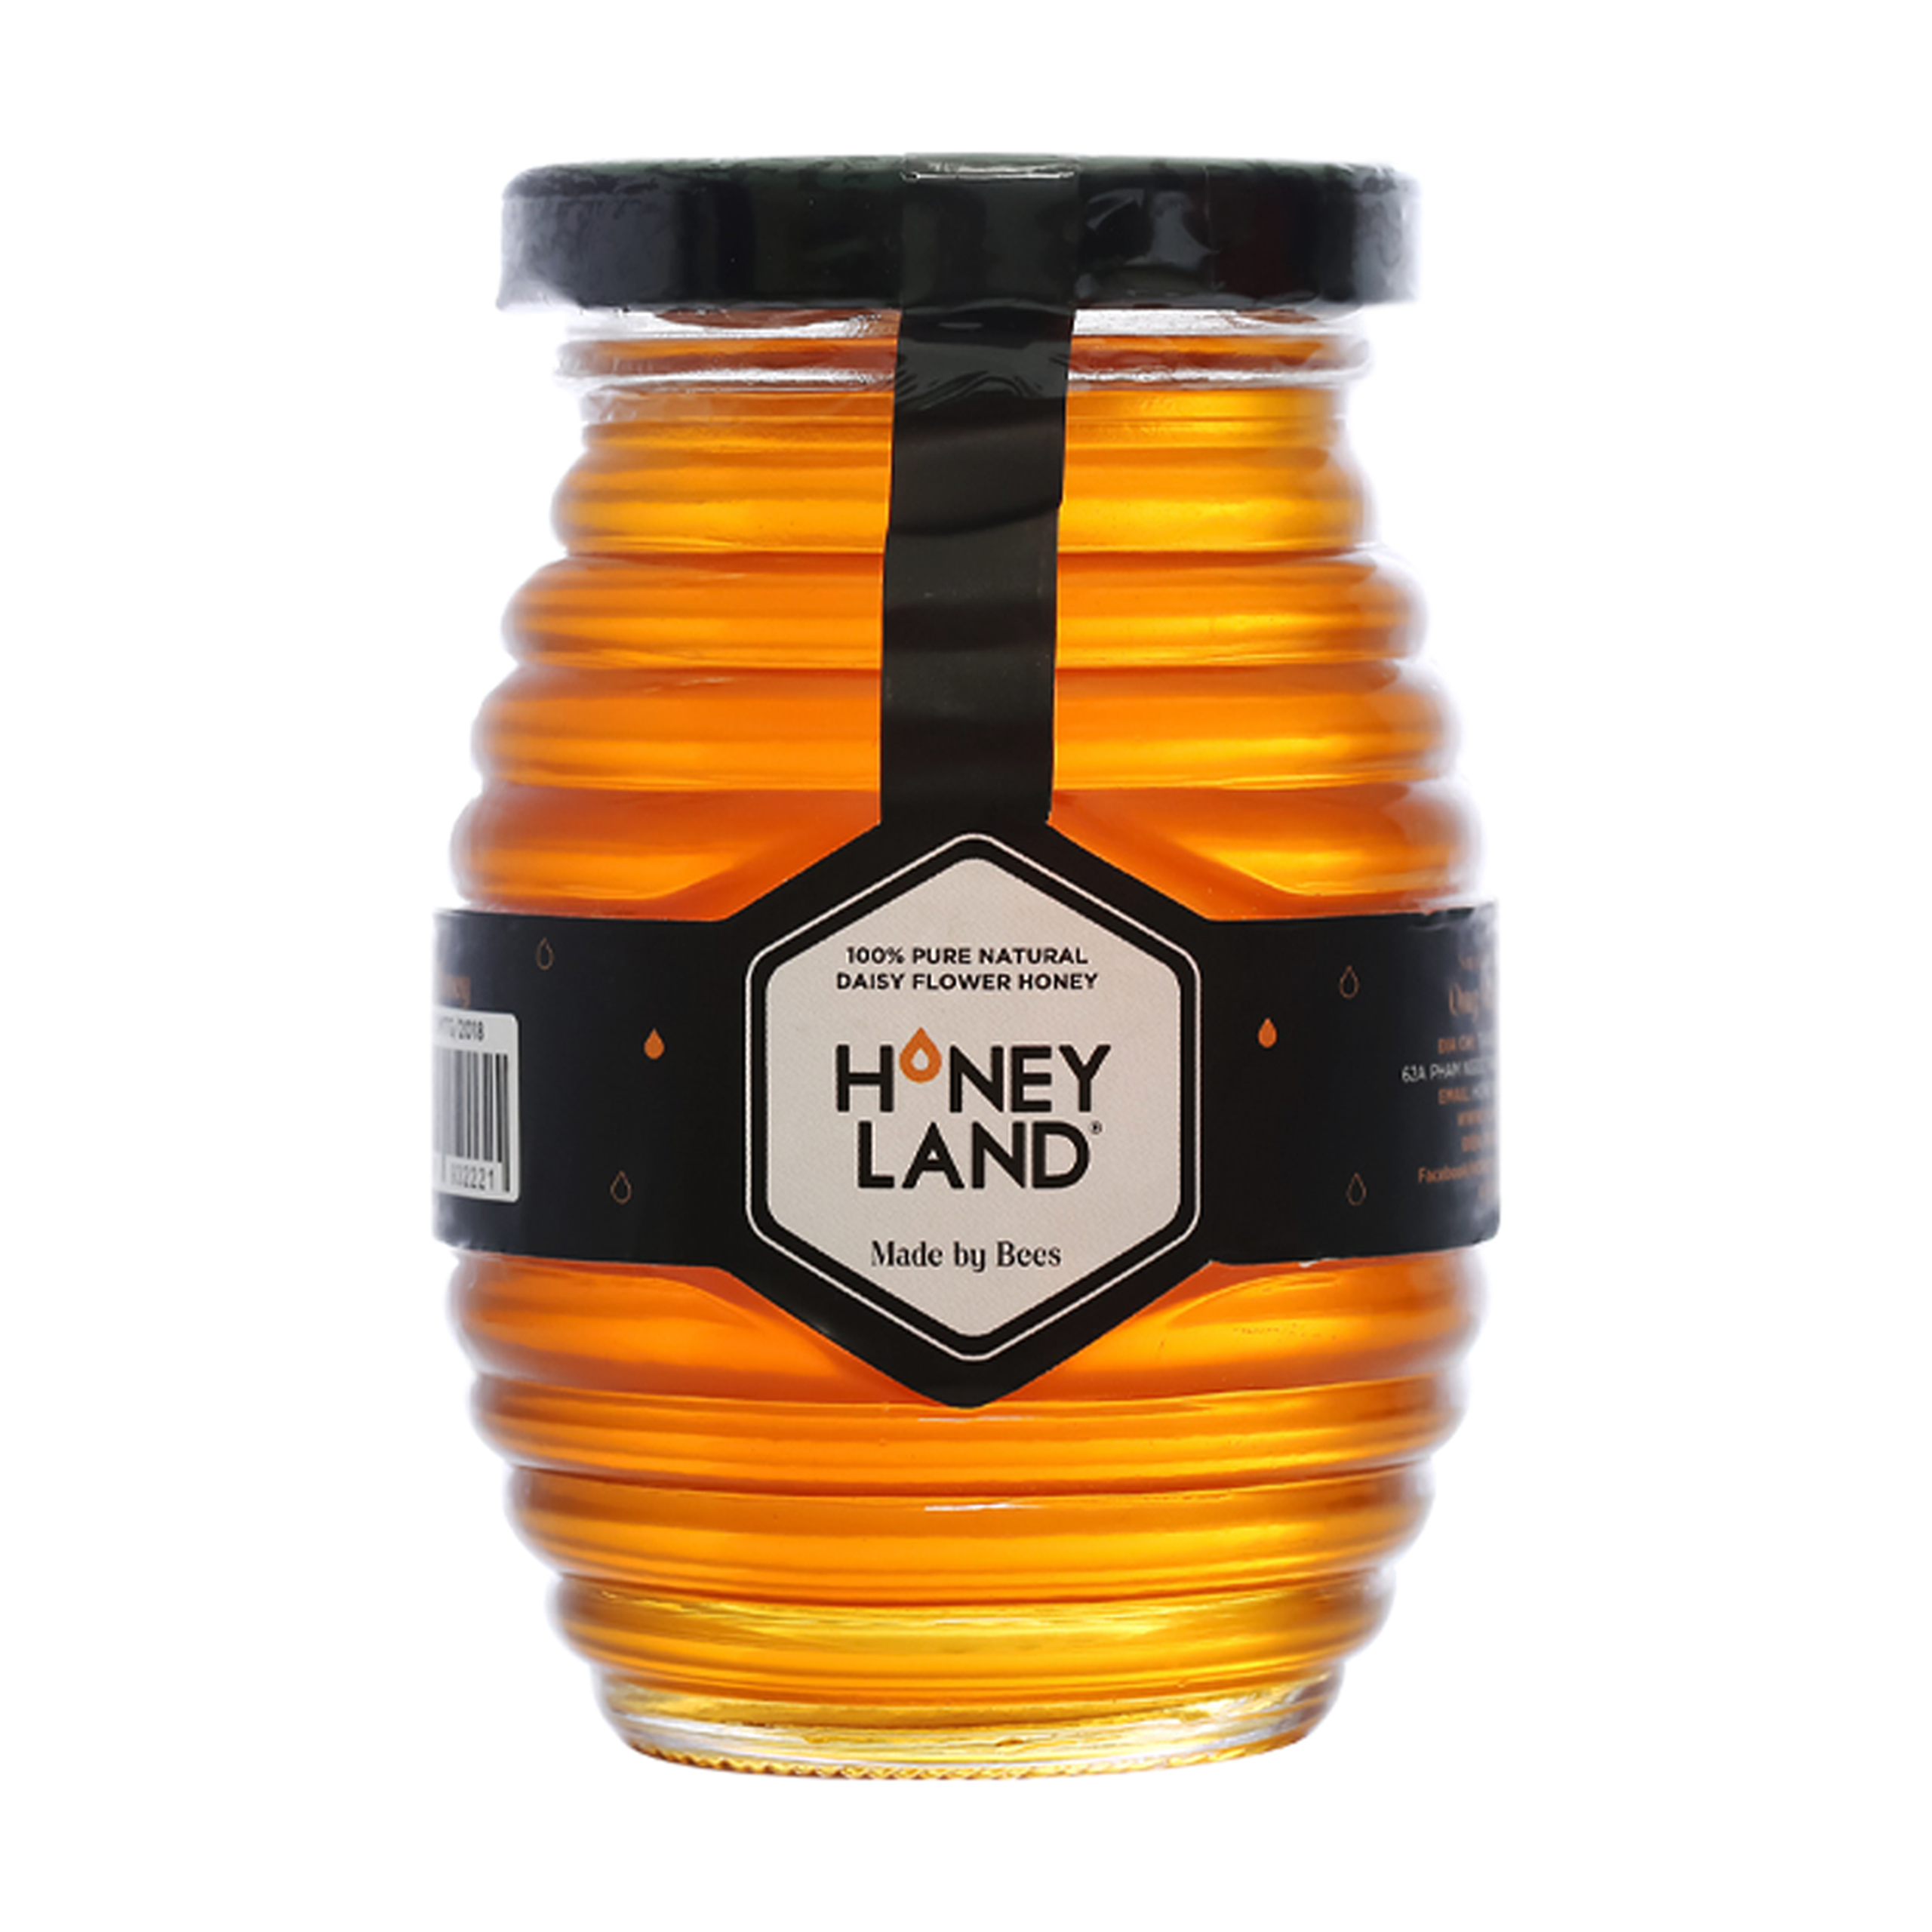 Mật Ong Hoa Rừng Honeyland 250g cung cấp nhiều dưỡng chất thiết yếu cho cơ thể